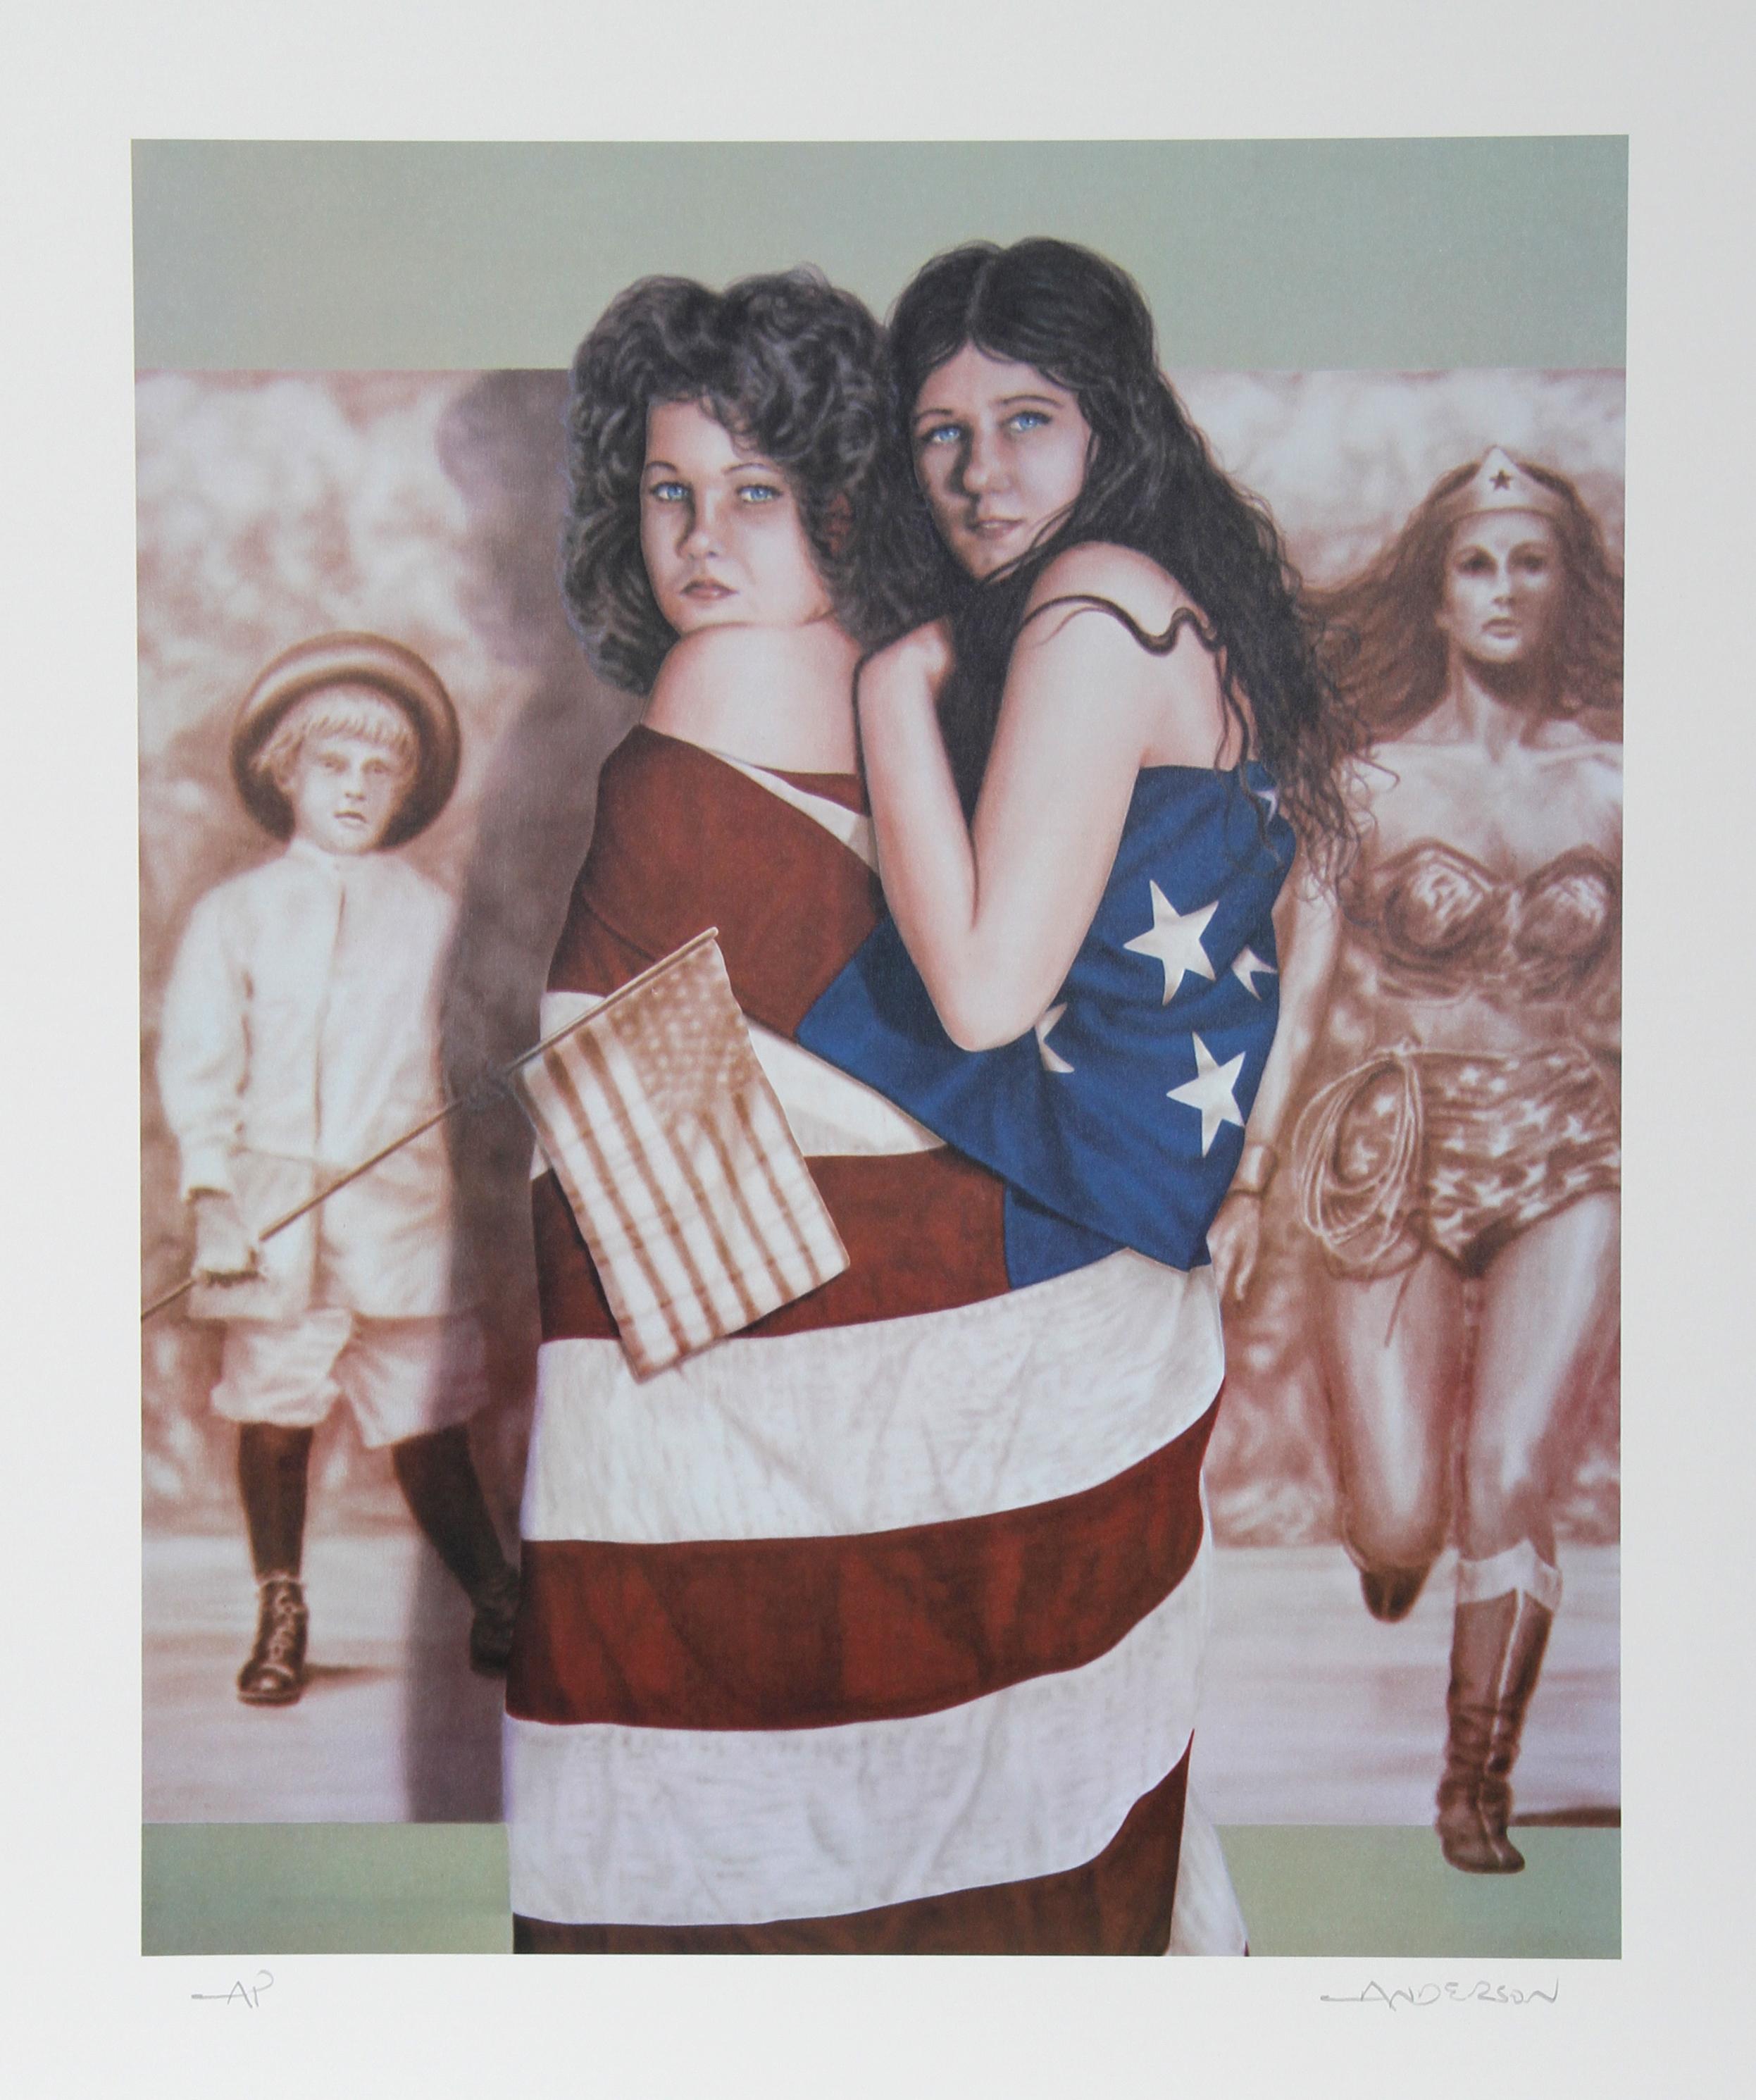 Dames multicolores
Robert Anderson, Américain (1945-2010)
Date : 1980
Lithographie, signée et numérotée au crayon
Edition de 250, AP
Taille de l'image : 22 x 18 pouces
Taille : 73,66 cm x 58,42 cm (29 in. x 23 in.)